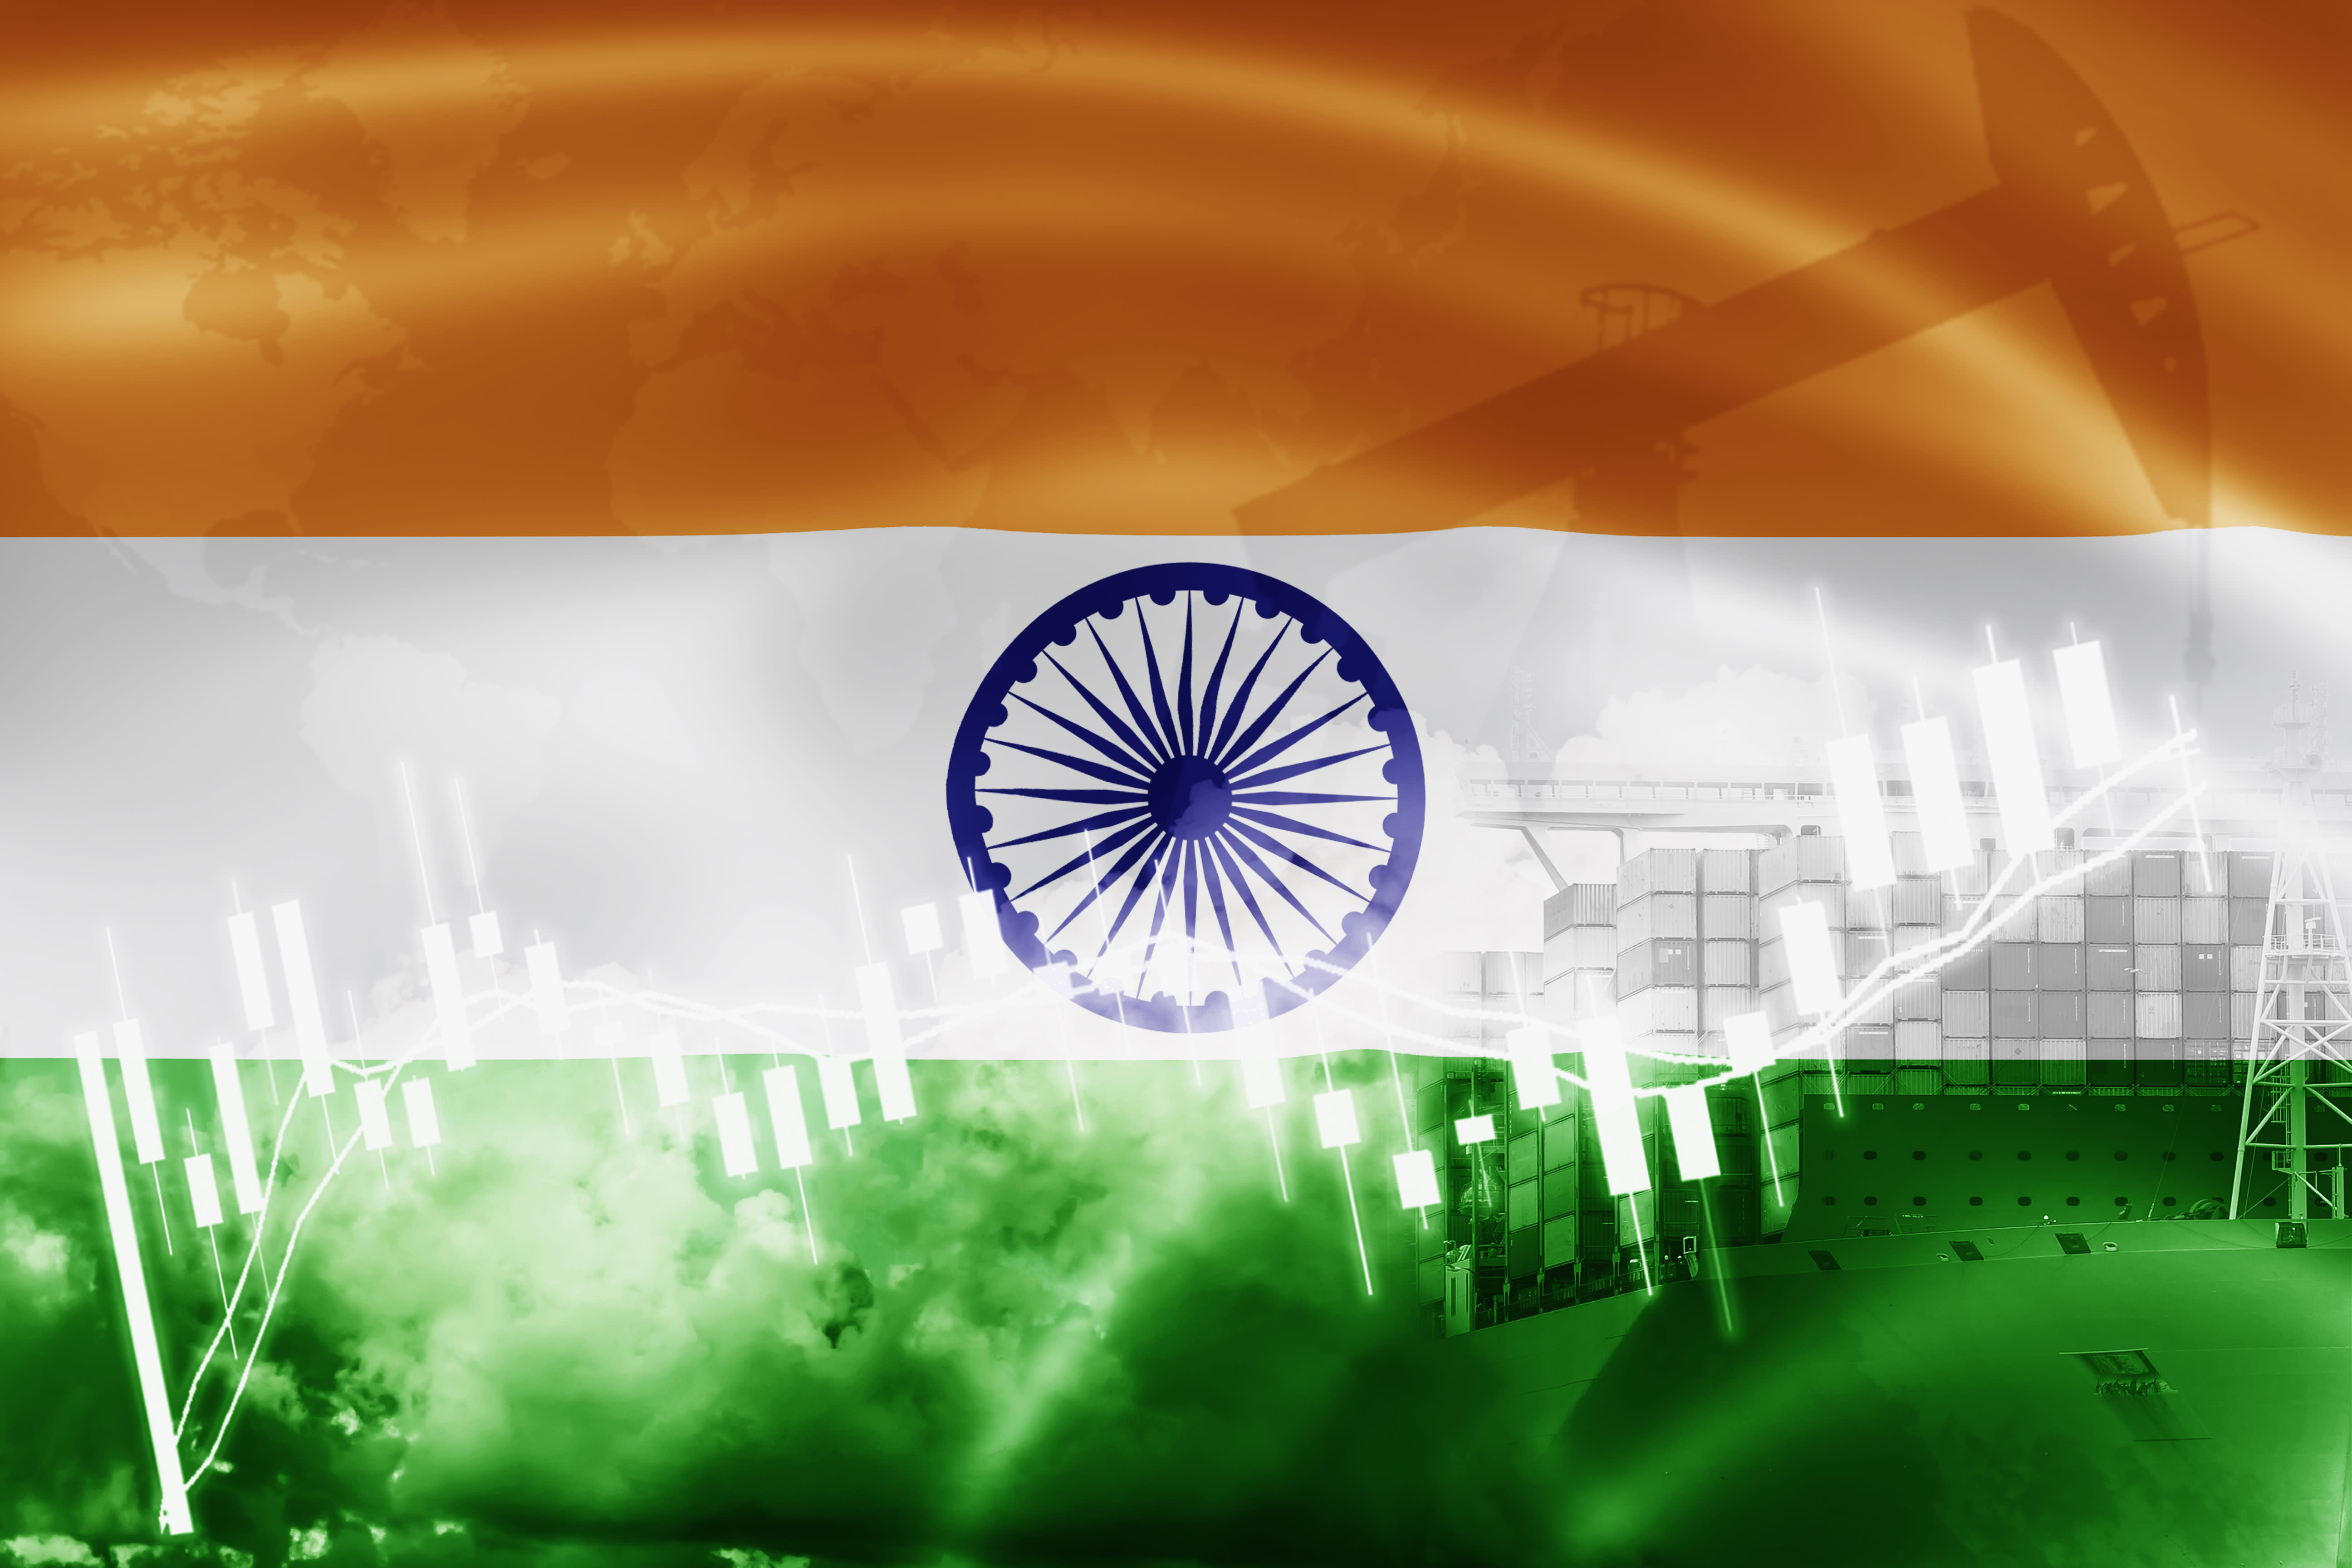 الهند توقع اتفاقية تجارة حرة بقيمة 100 مليار دولار مع أربع دول من خارج الاتحاد الأوروبي